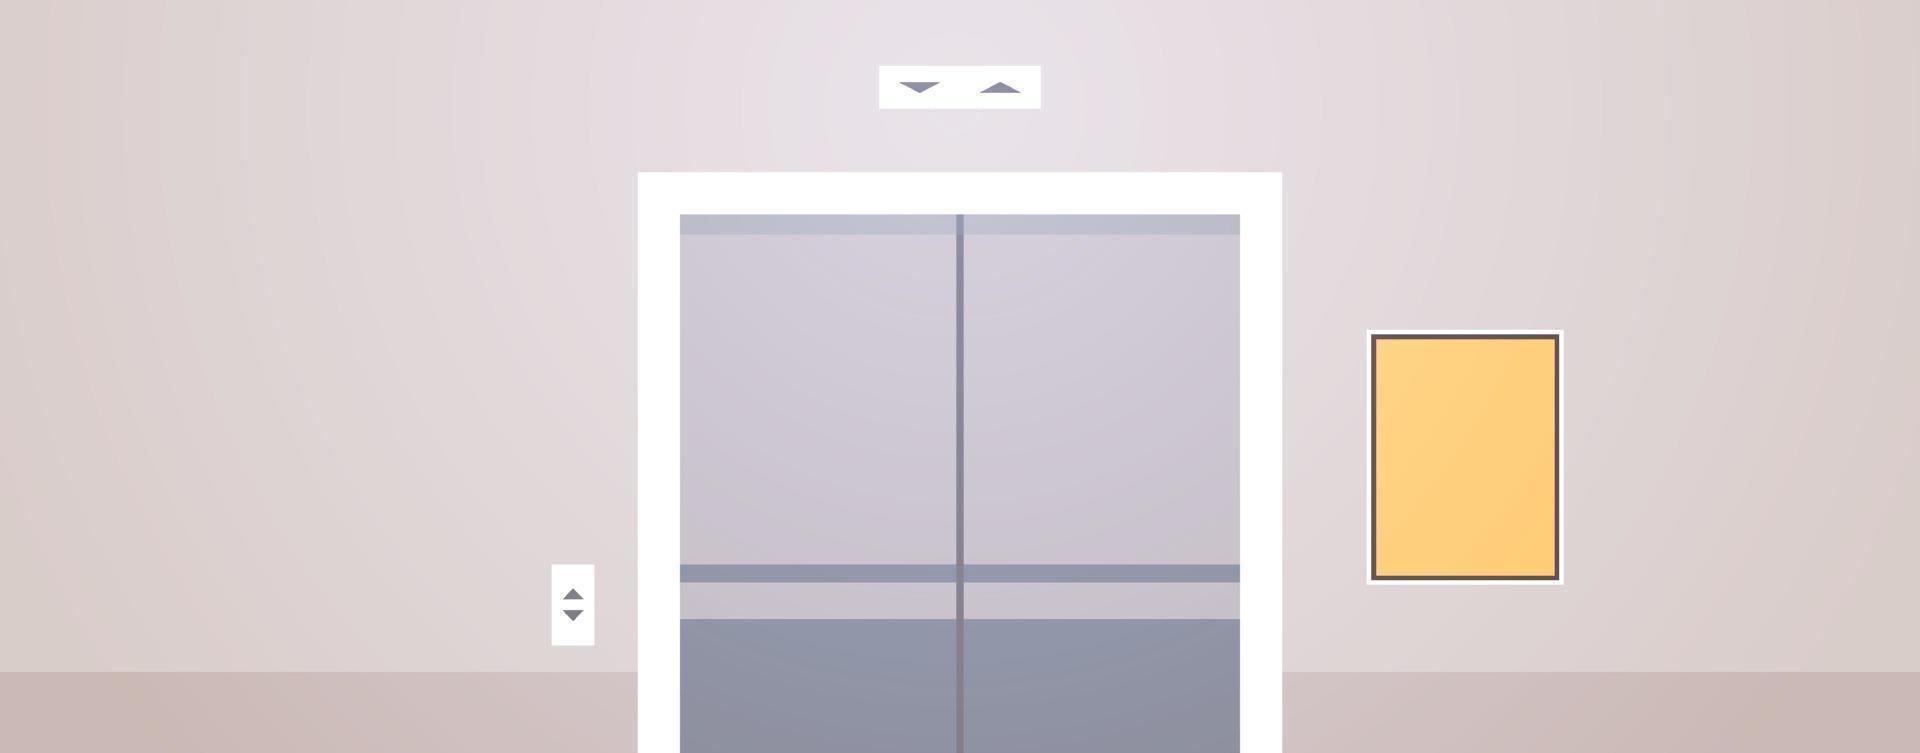 zone de couloir de bureau vide pas de personnes et illustration vectorielle plane de design d'intérieur d'ascenseur de bureau moderne. vecteur